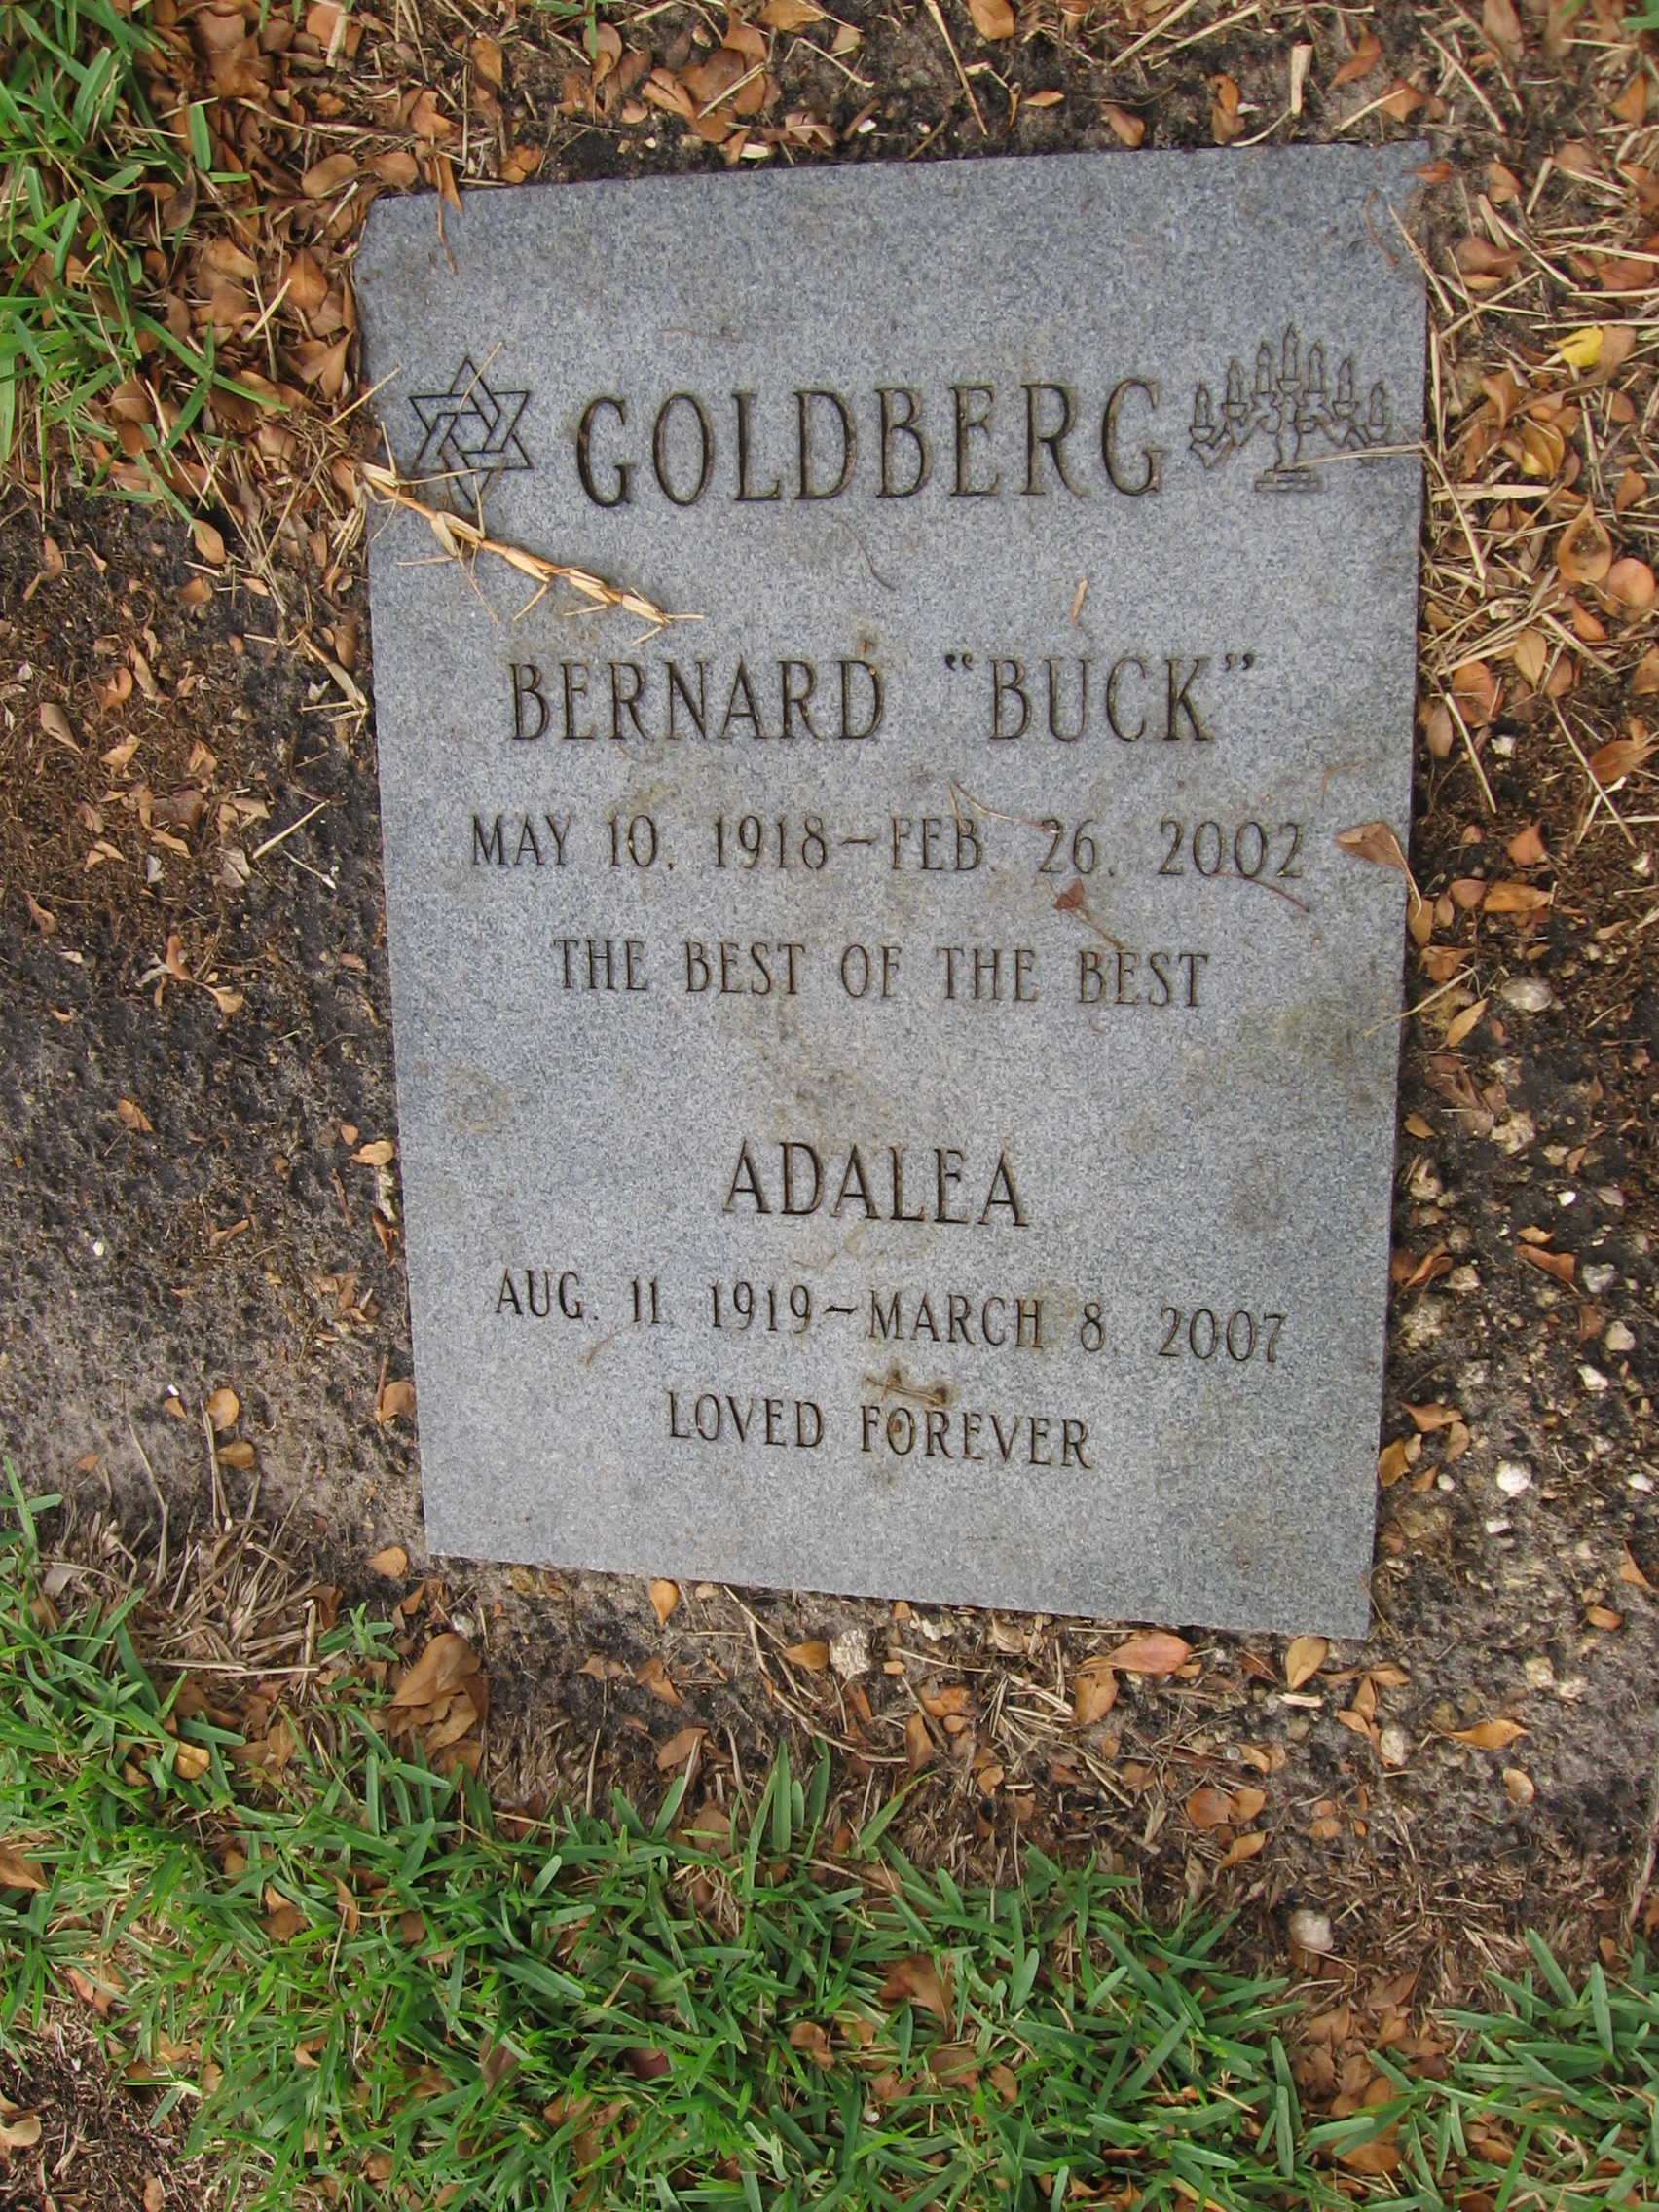 Bernard "Buck" Goldberg